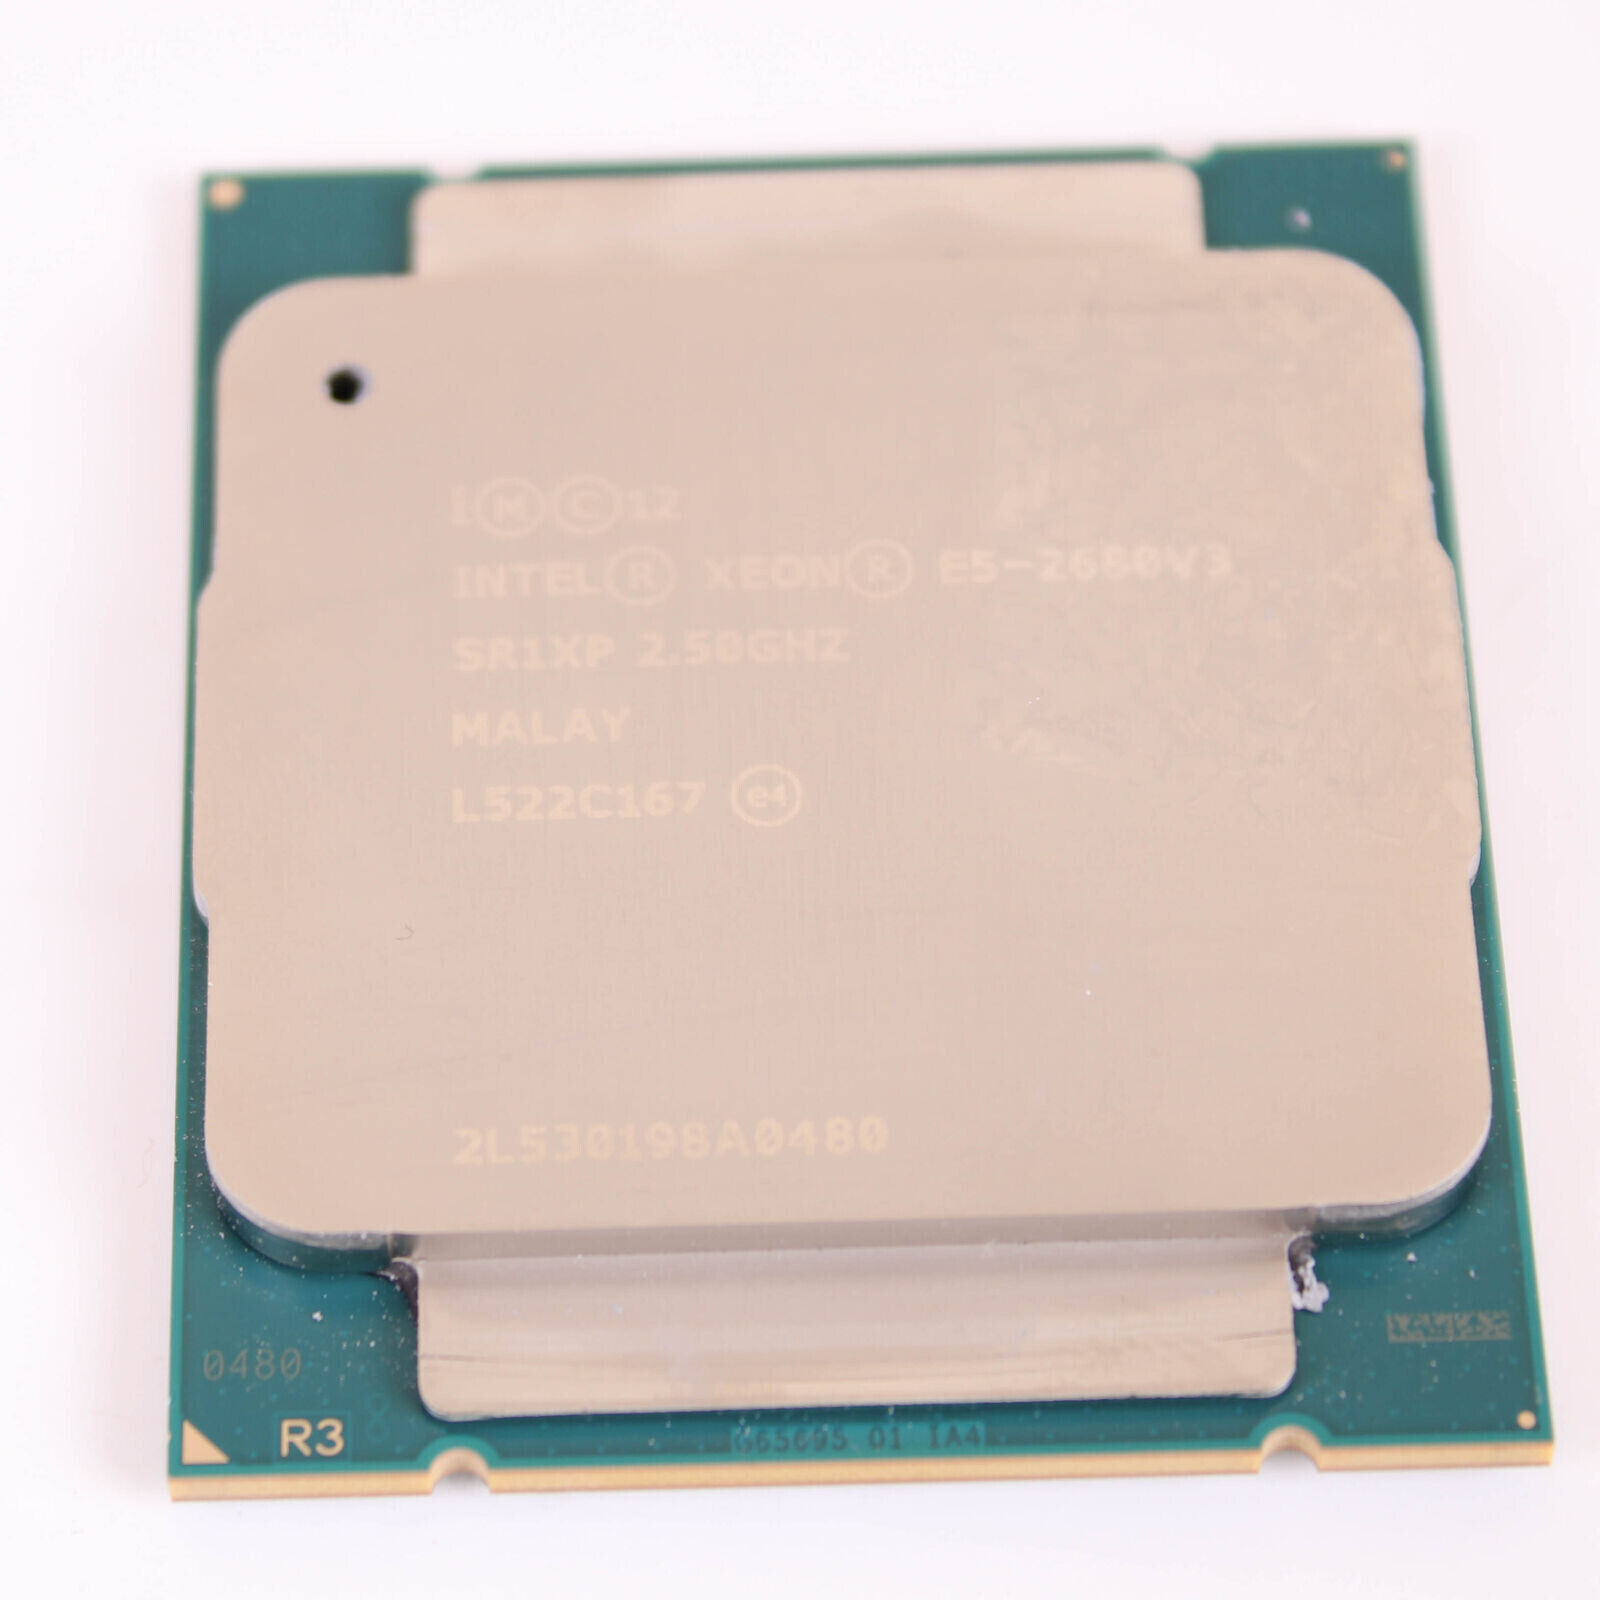 SR1XP Intel Xeon E5-2680 v3 12 Core 30MB 2.5GHz LGA 2011-3 A Grade Processor